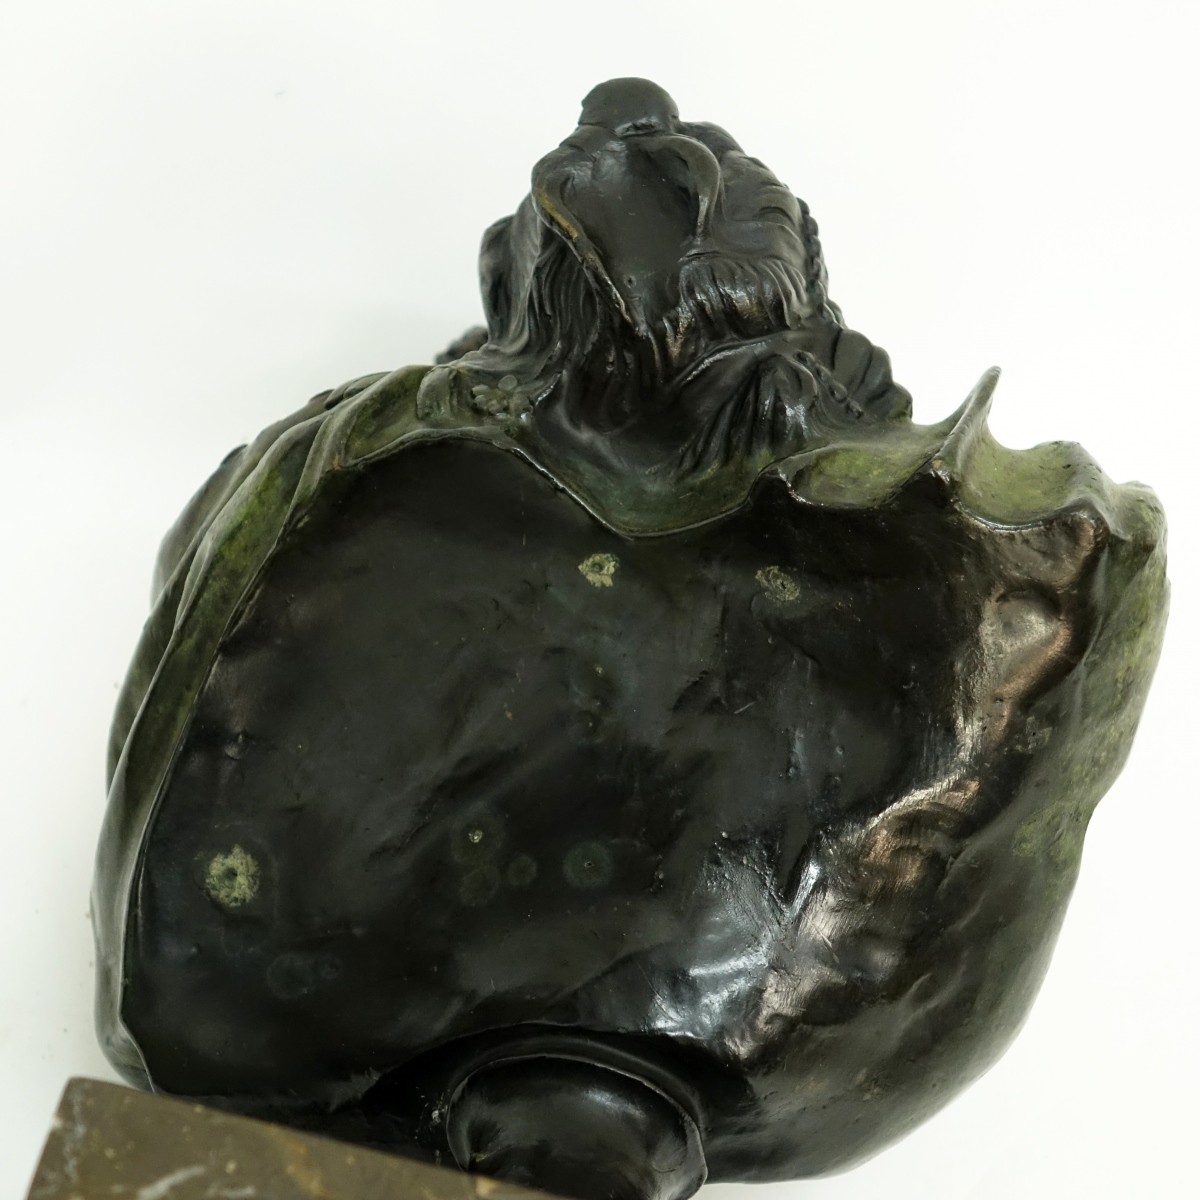 After Houdon (1741-1828) Bronze Sculpture Le Baise